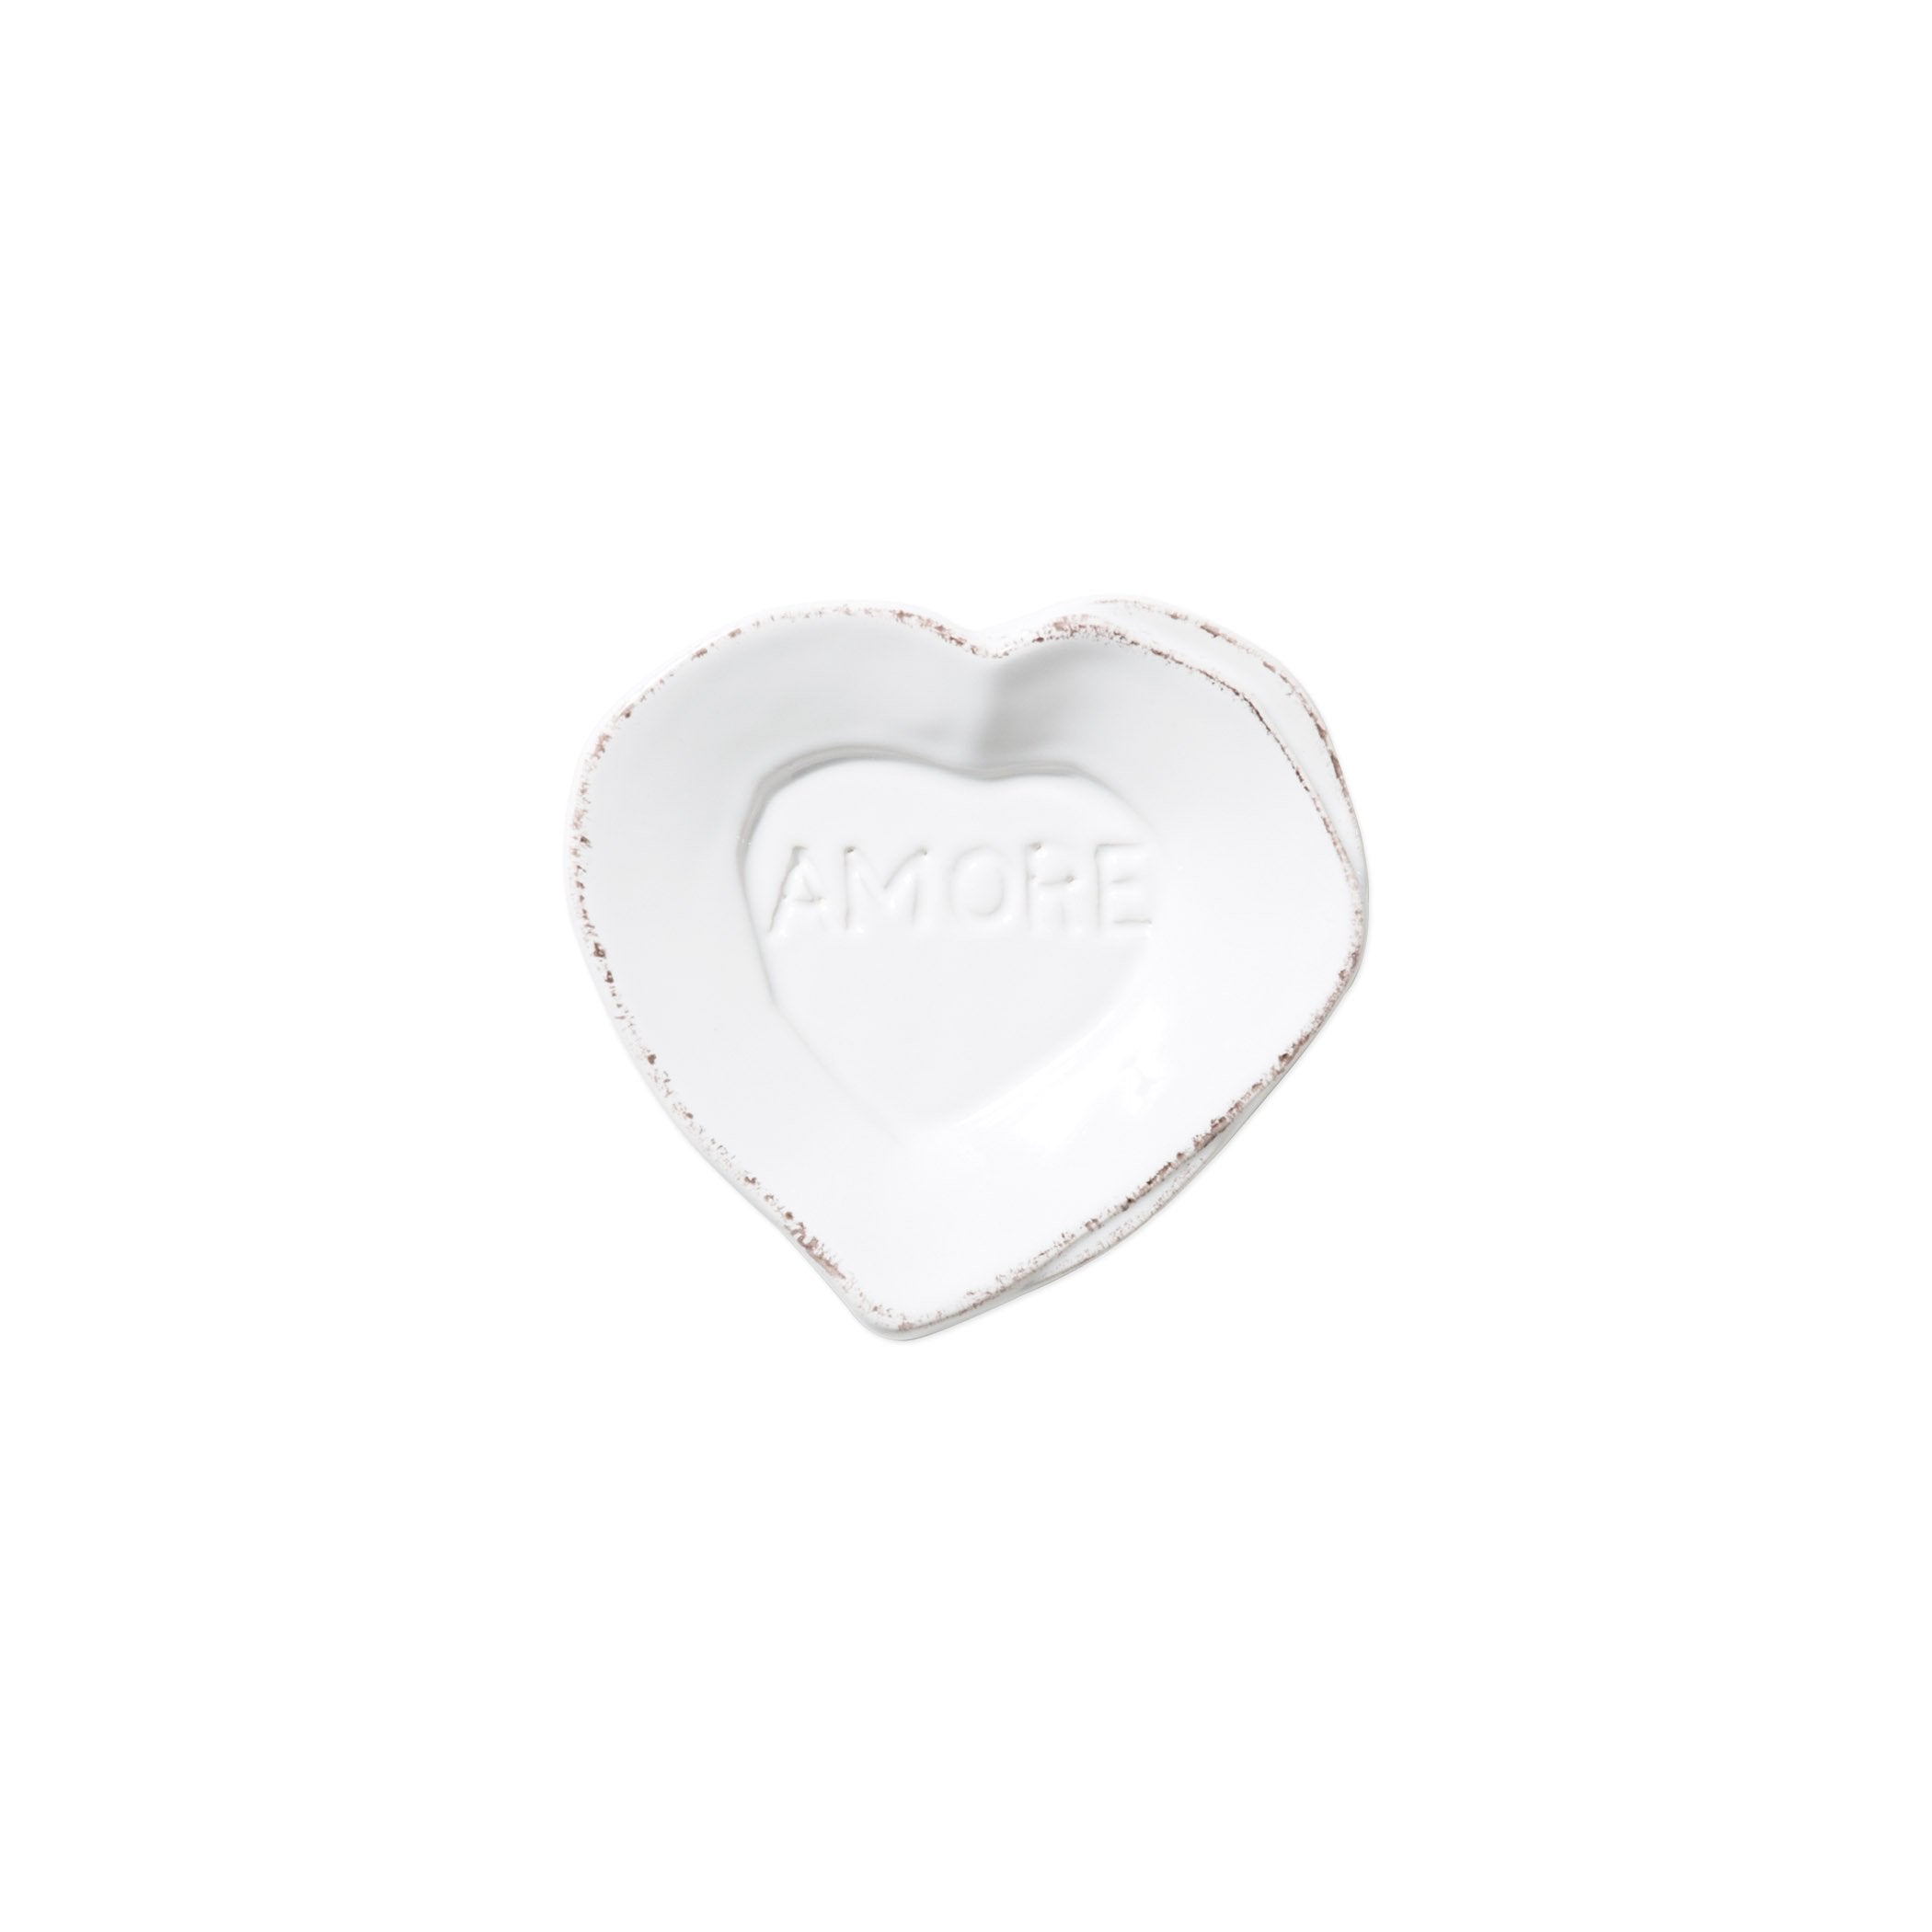 Lastra White Heart Mini Amore Plate